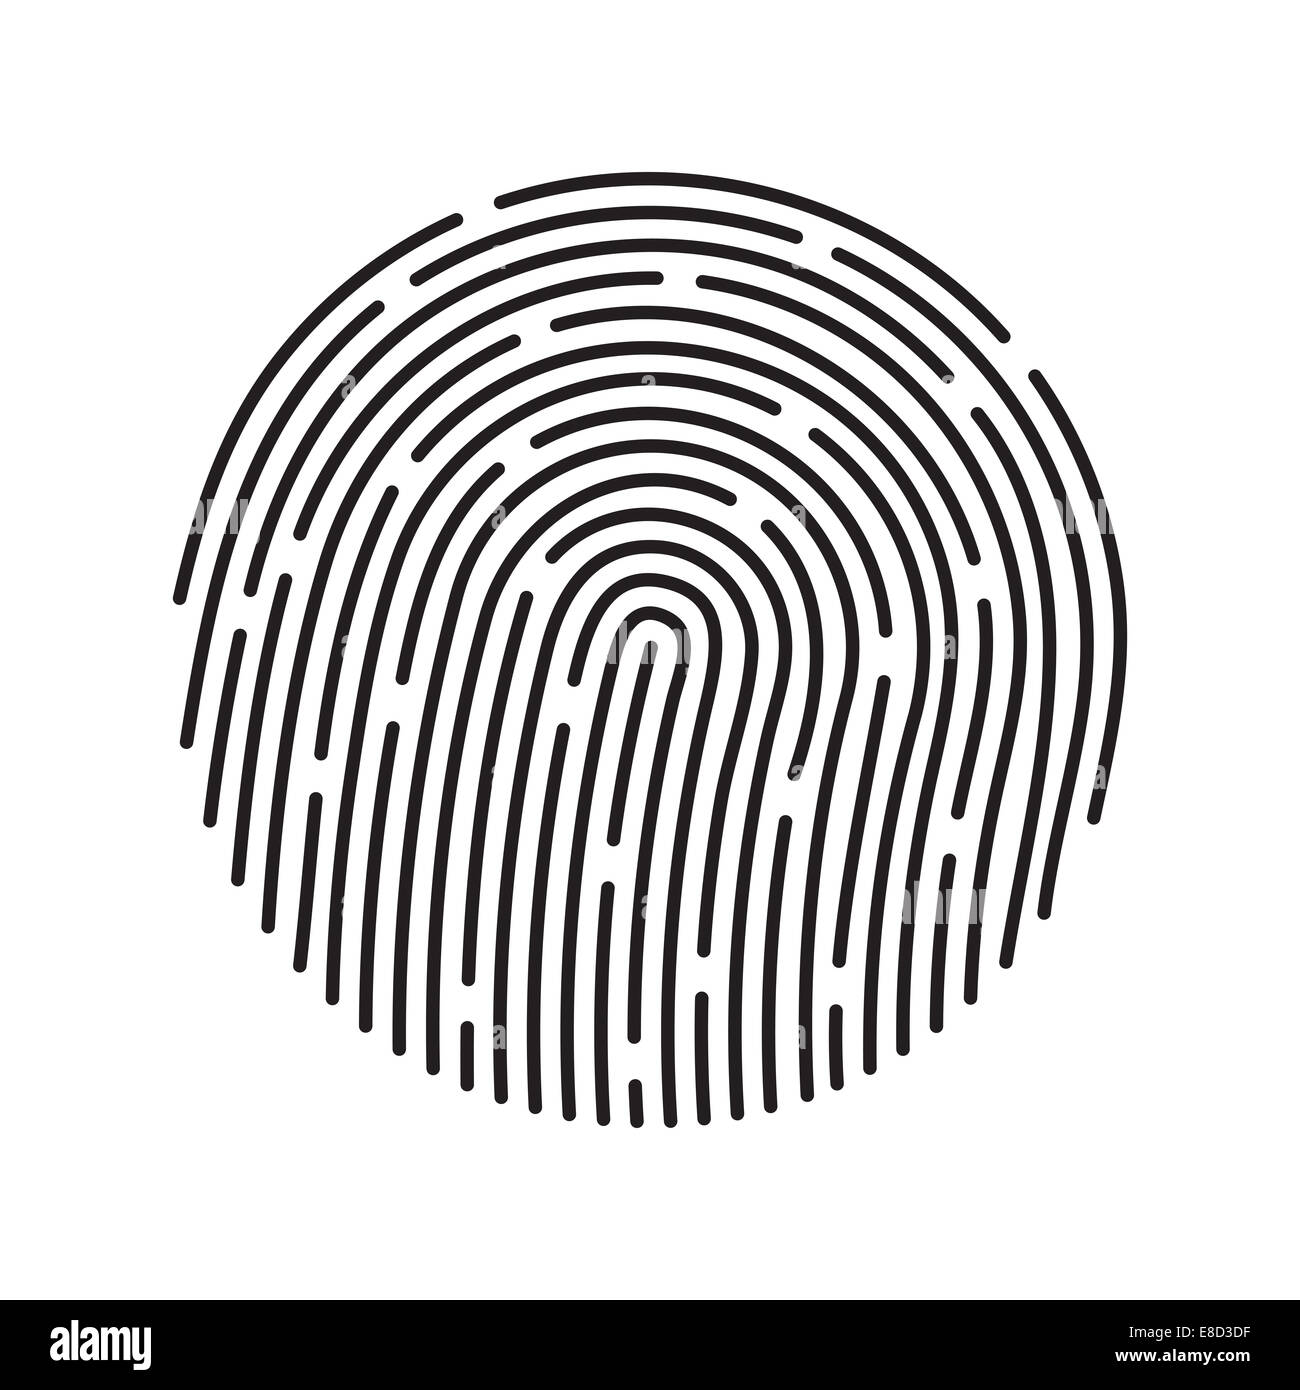 Fingerprint identification system, simbolo nero isolato su bianco Foto Stock